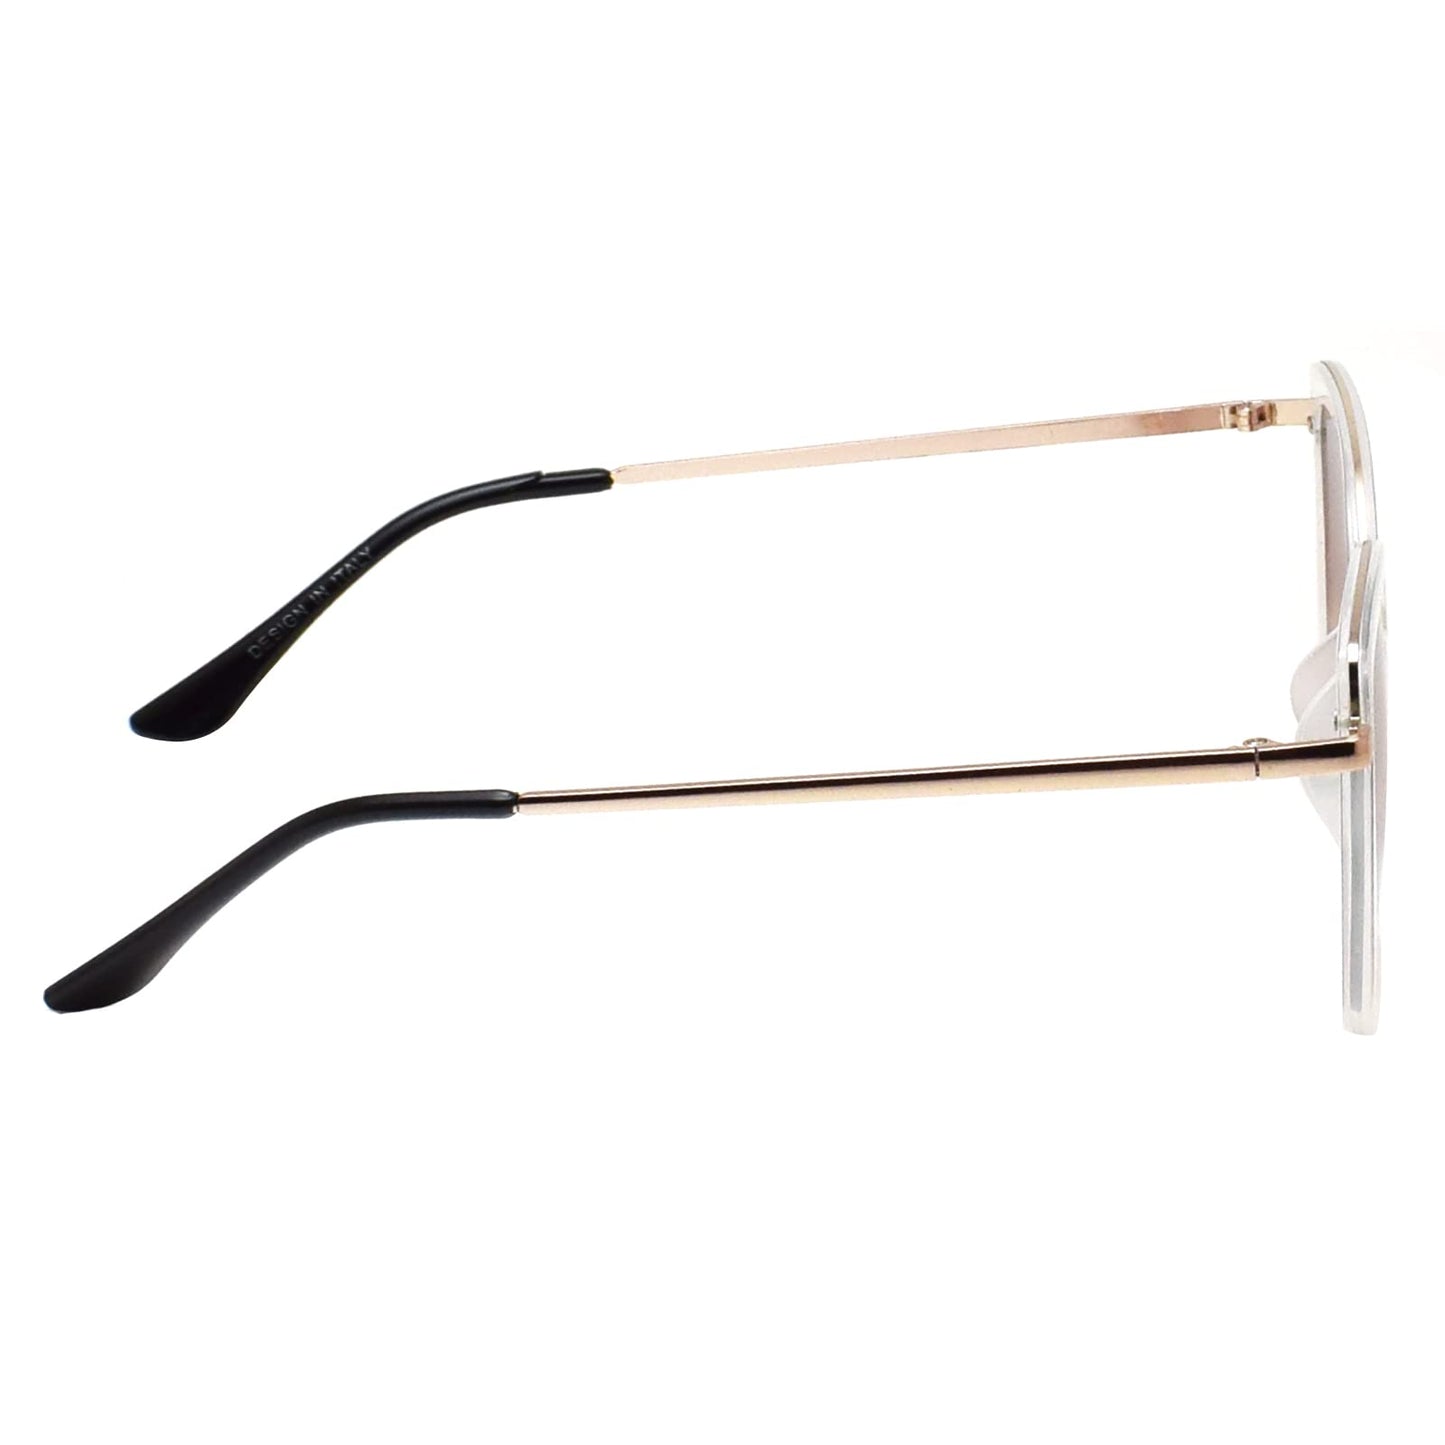 Peter Jones UV Protected Retro Cateye Sunglasses for Women/Girls